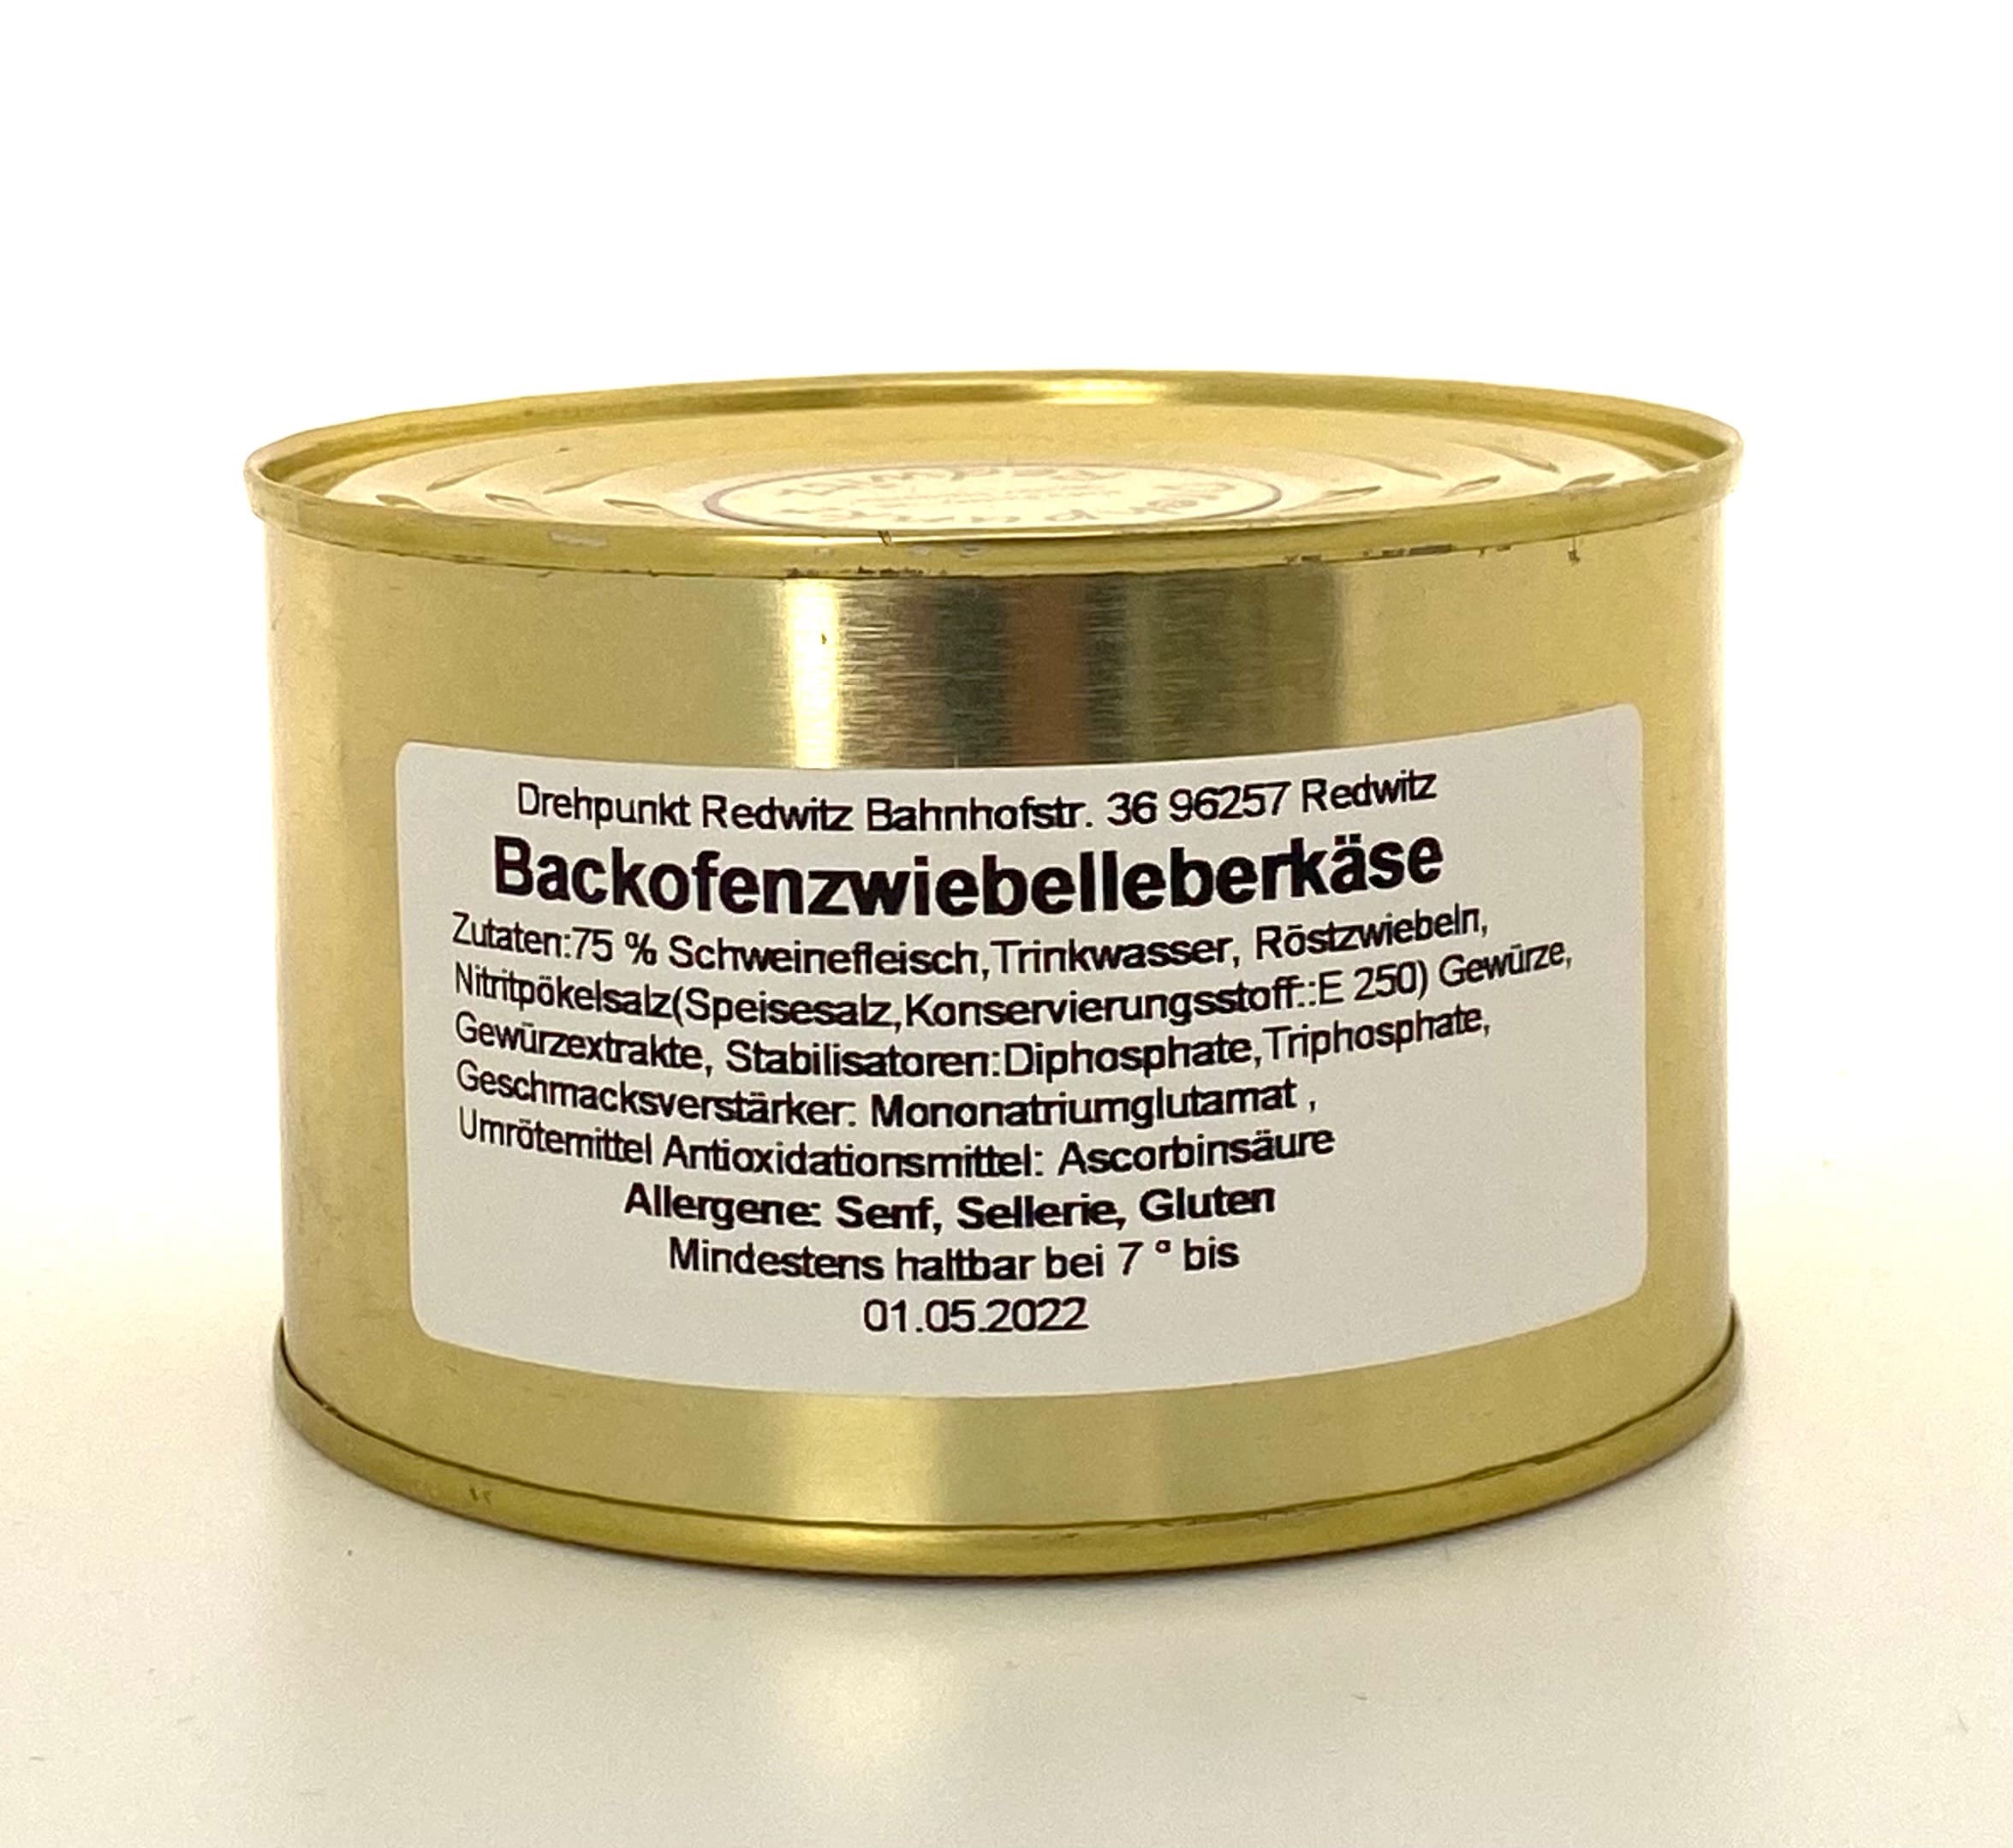 Backofen - Zwiebelleberkäse